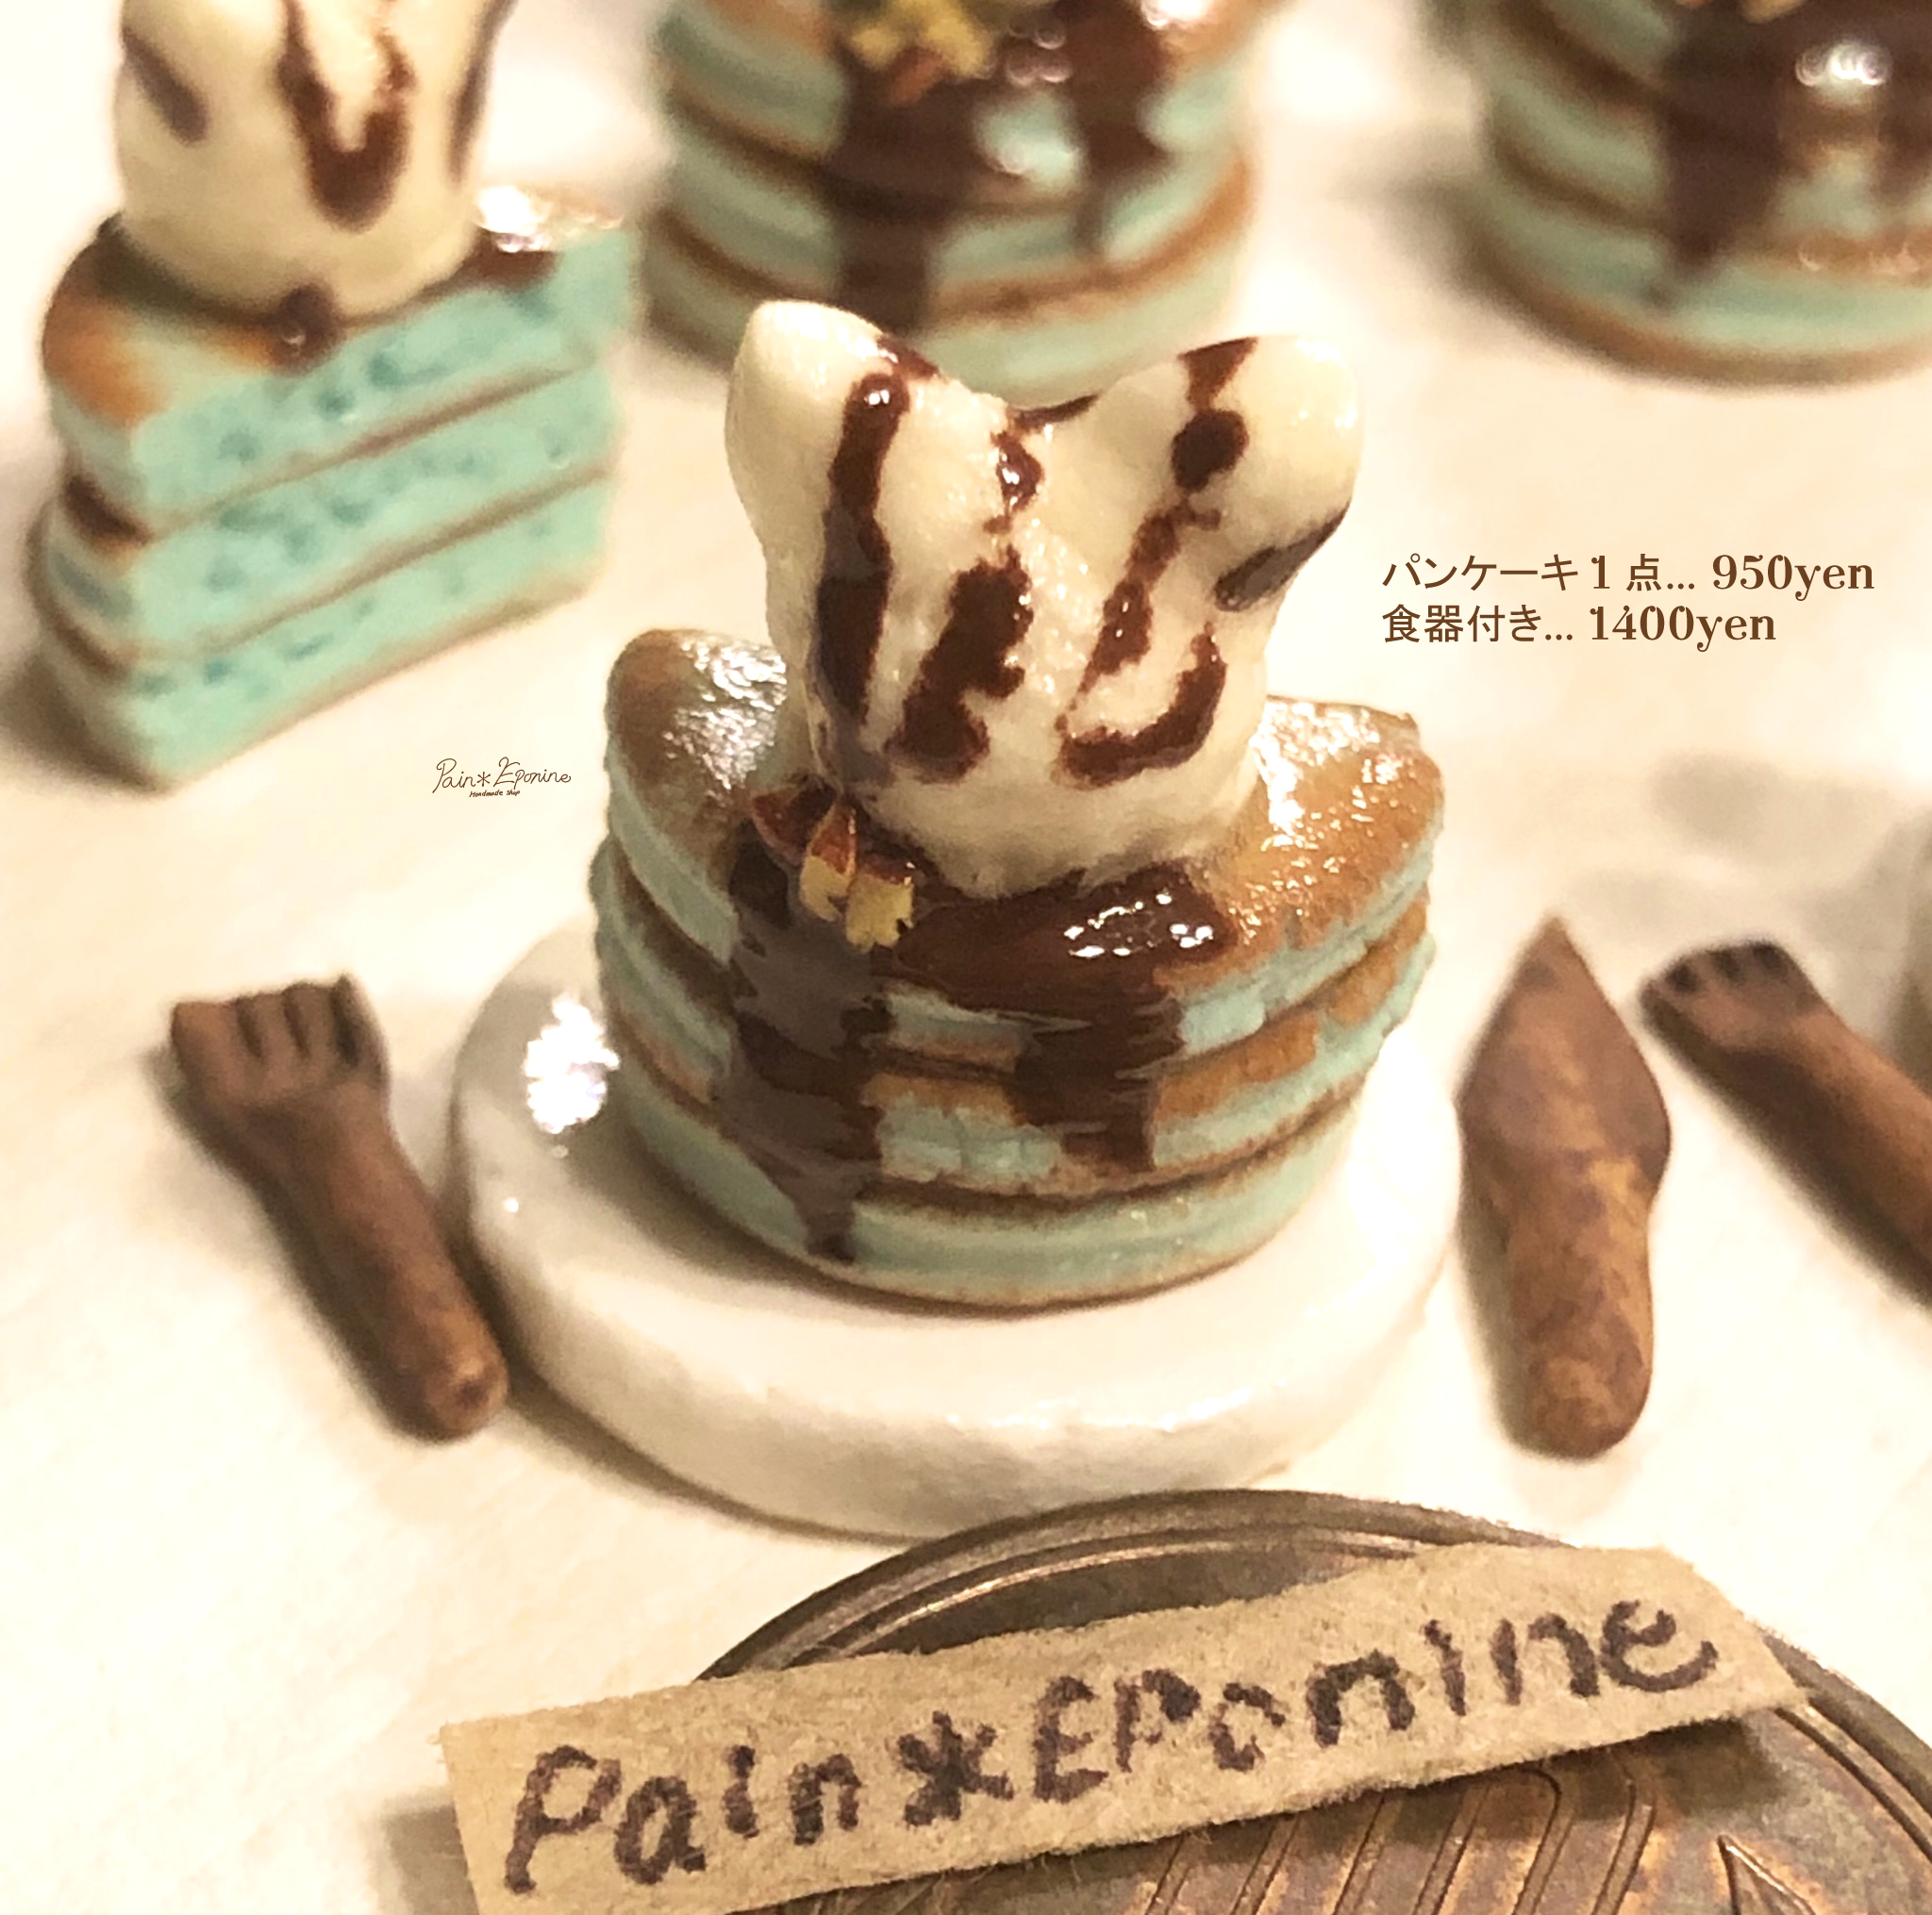 ミニチュア チョコミントパンケーキ にゃんこアイス バニラ Paineponine